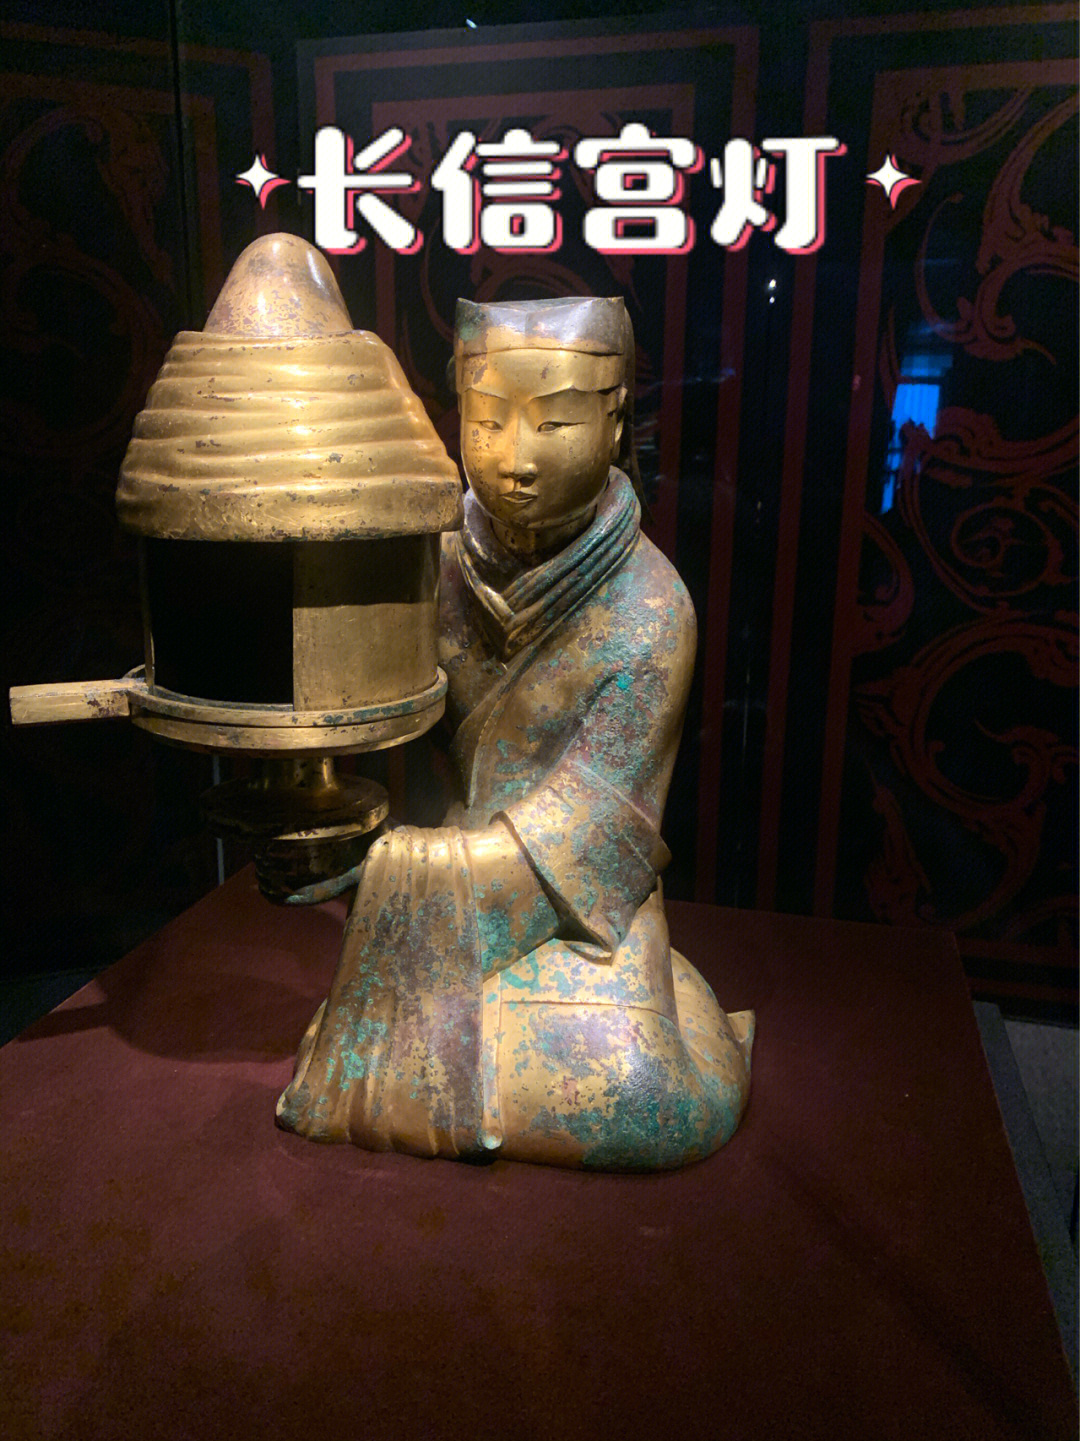 西汉长信宫灯,中国汉代青铜器,1968年于河北省满城县(今河北省保定市